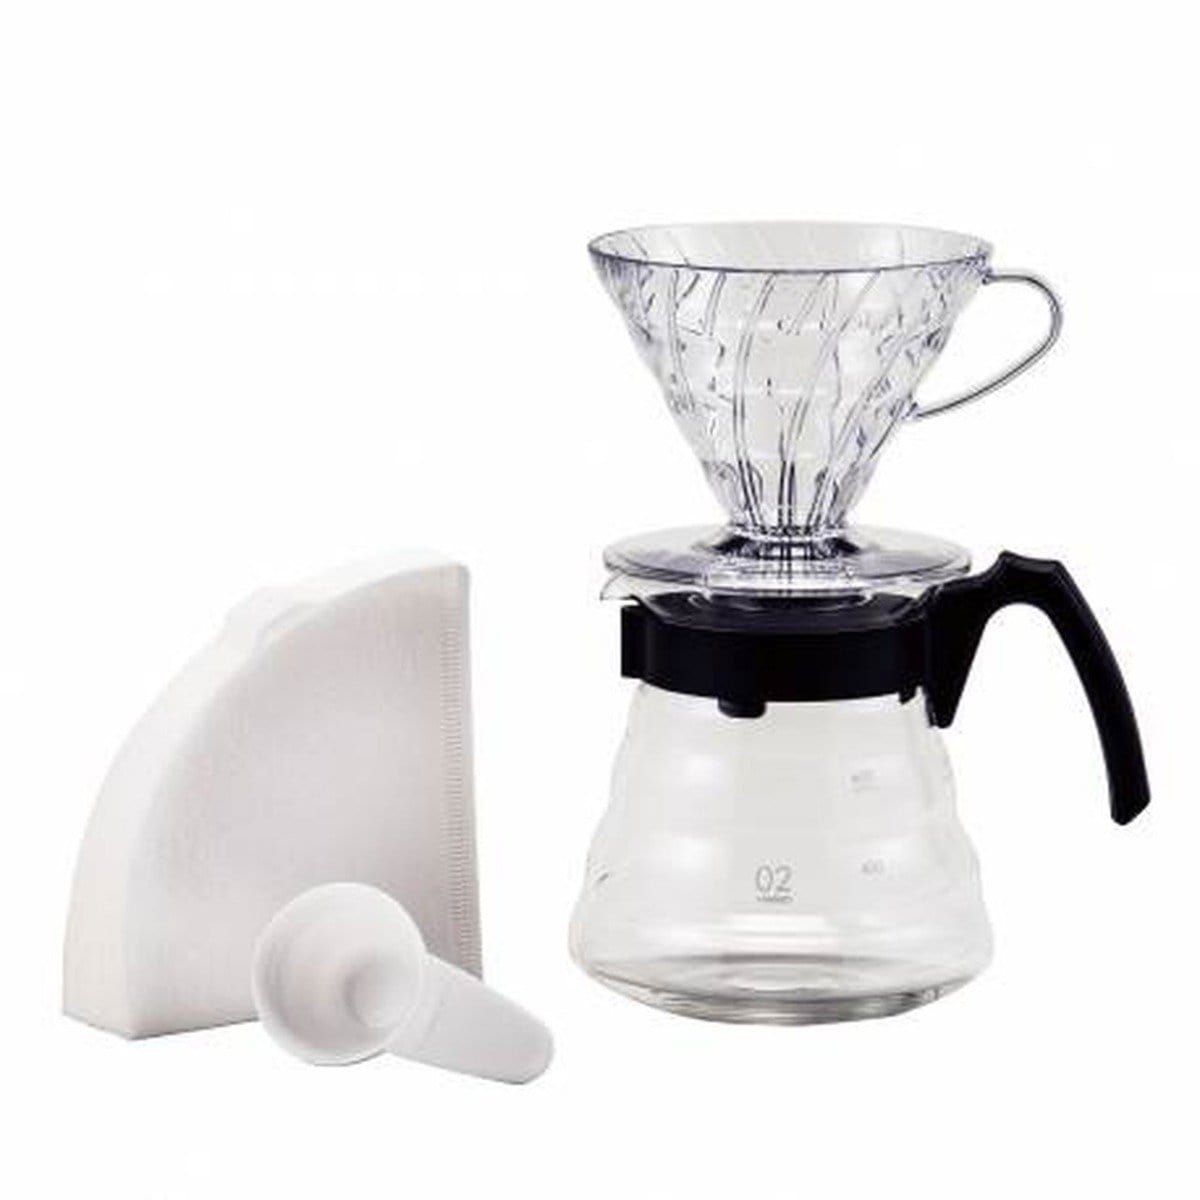 Hario Hario V60 Coffee Maker Set